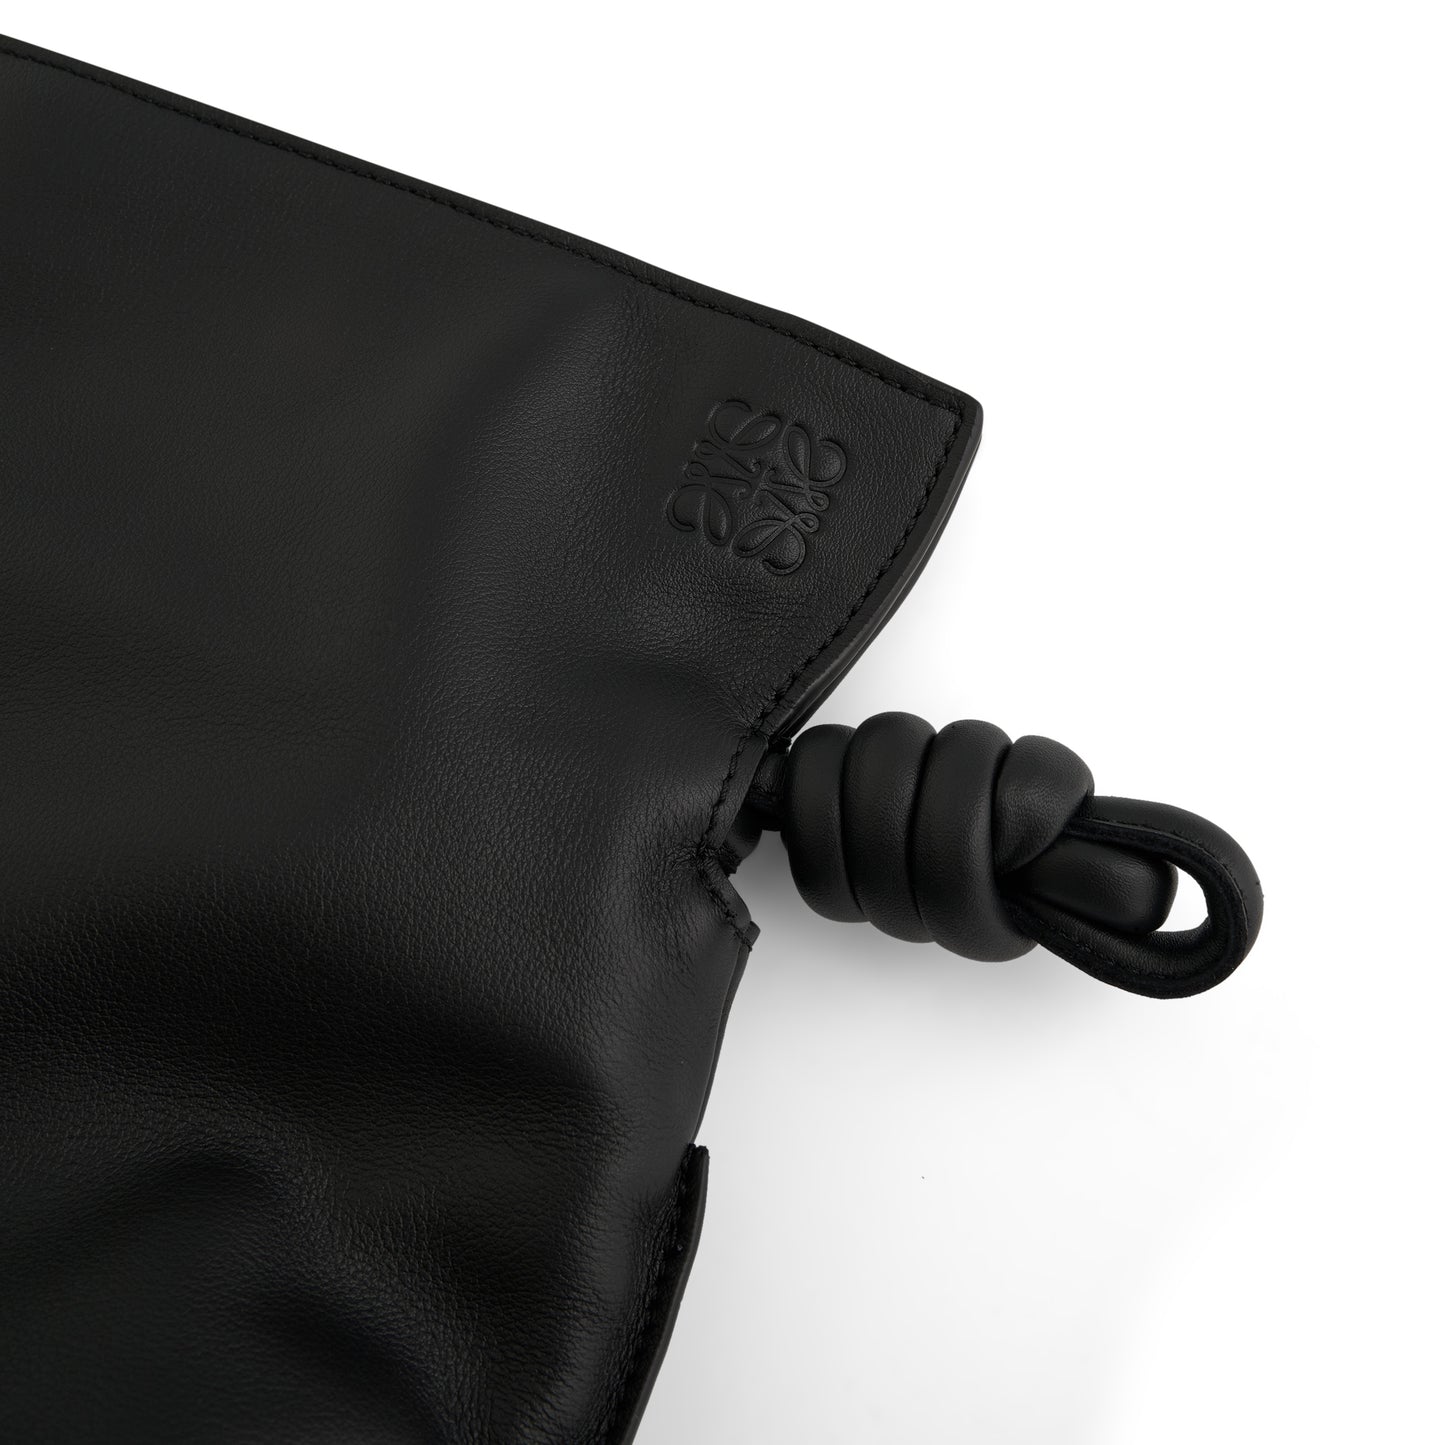 Flamenco Clutch Bag in Black